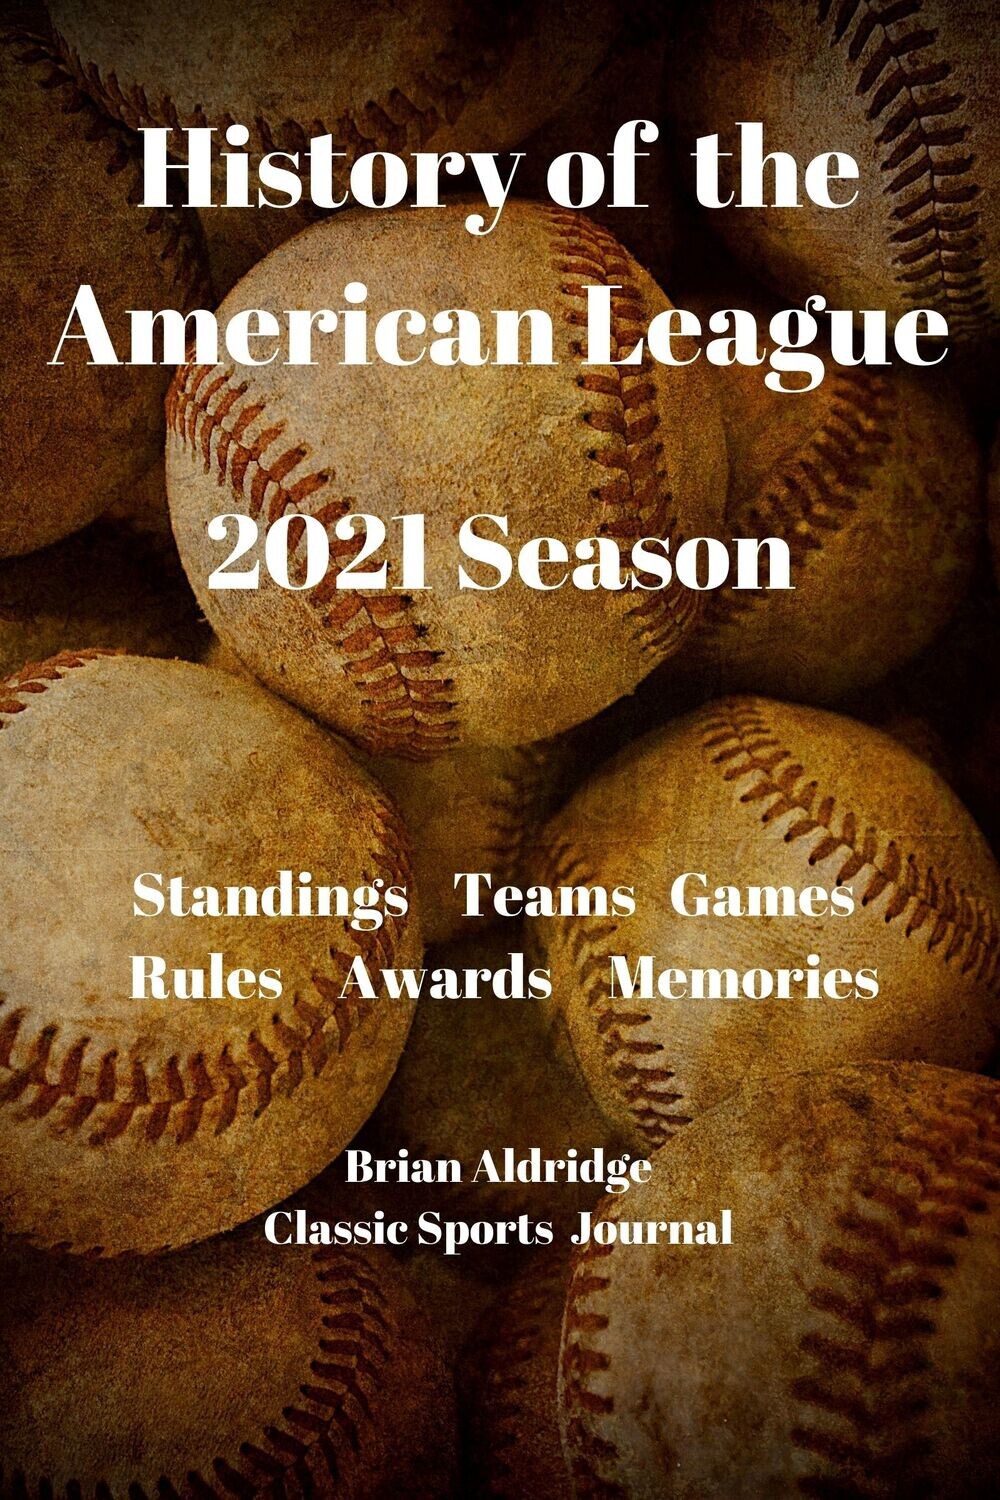 American League: The 2021 Season